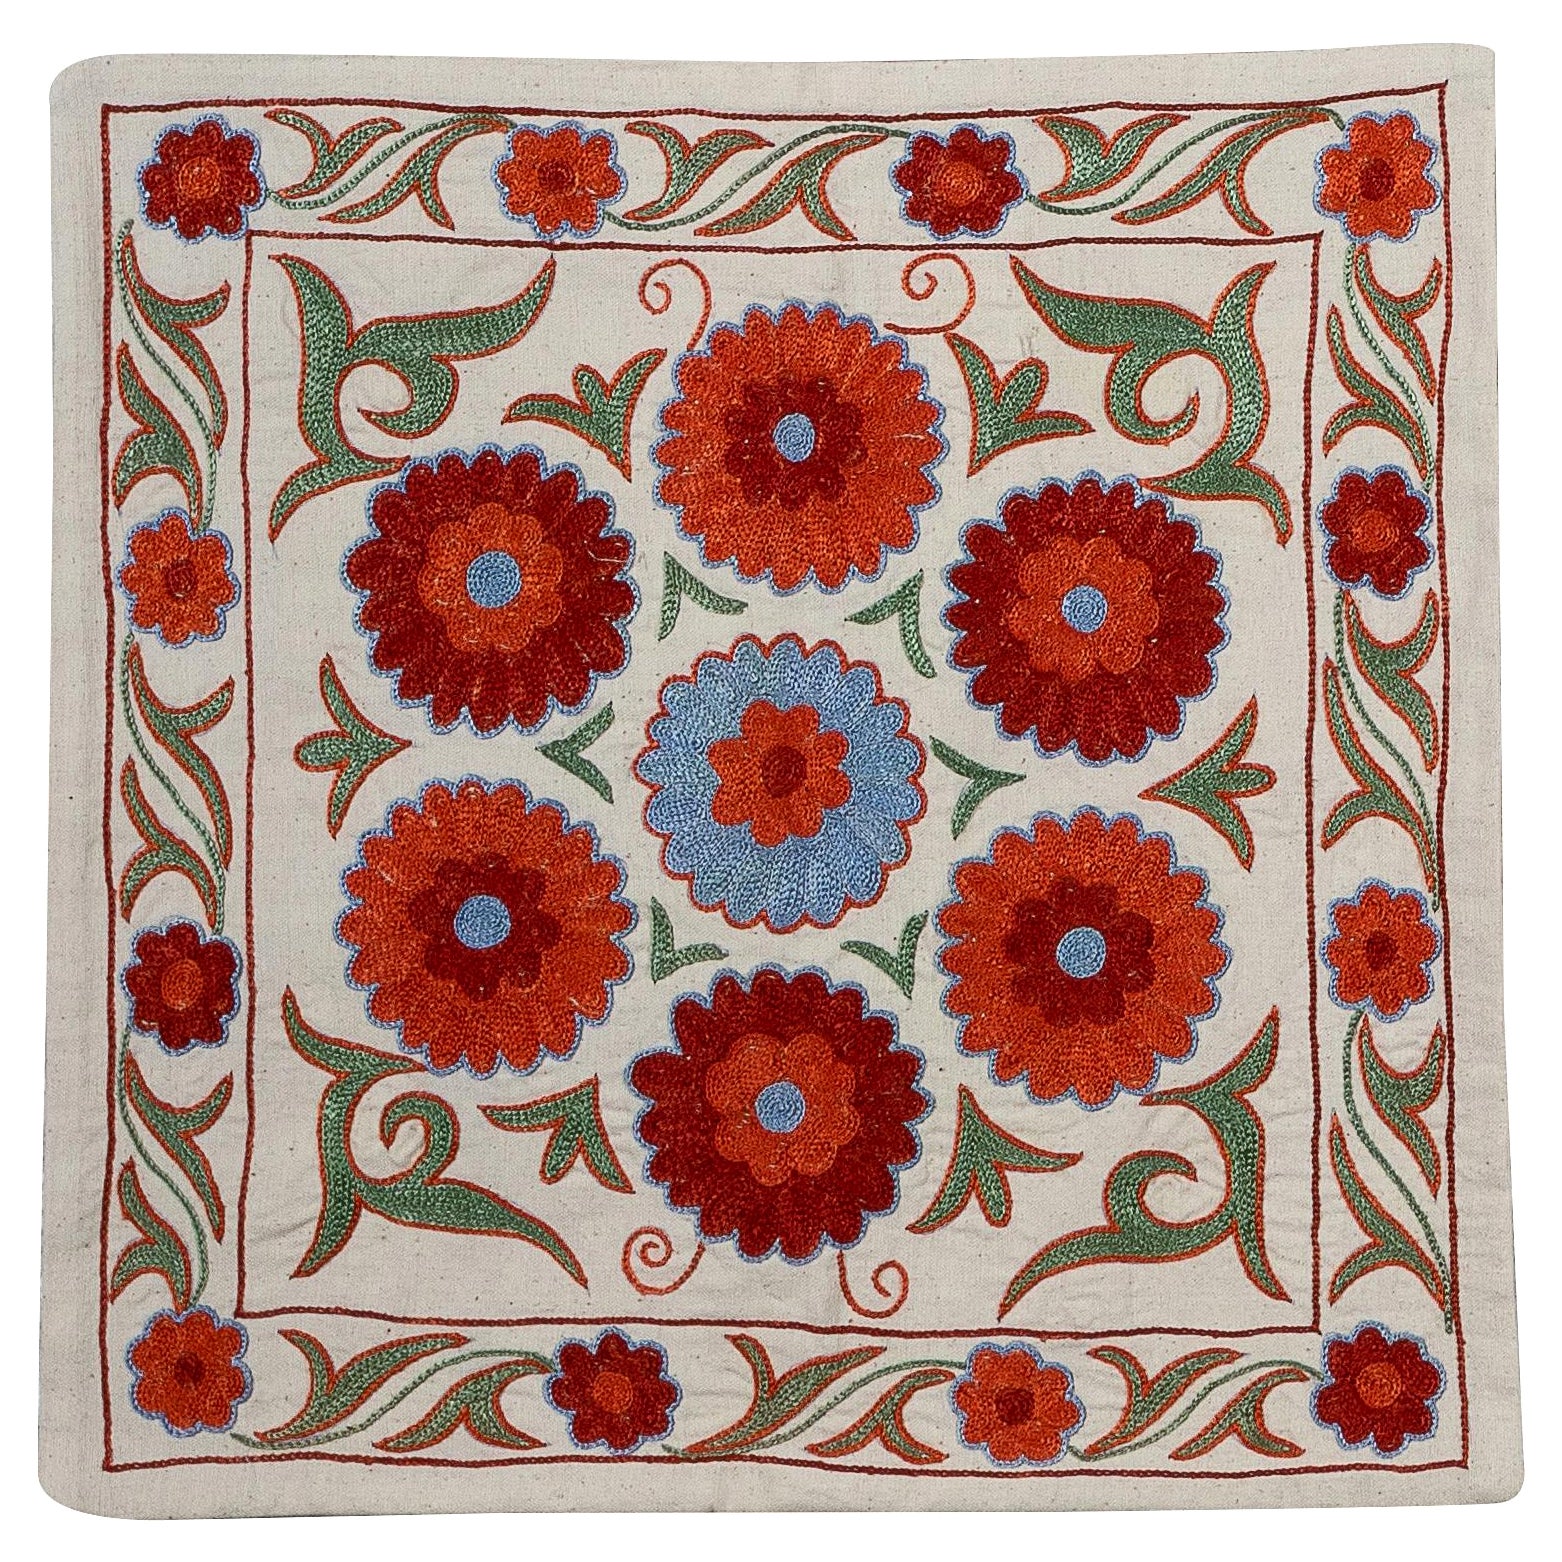 Coussin décoratif en tissu ouzbek Suzani, coussin en coton et soie brodé